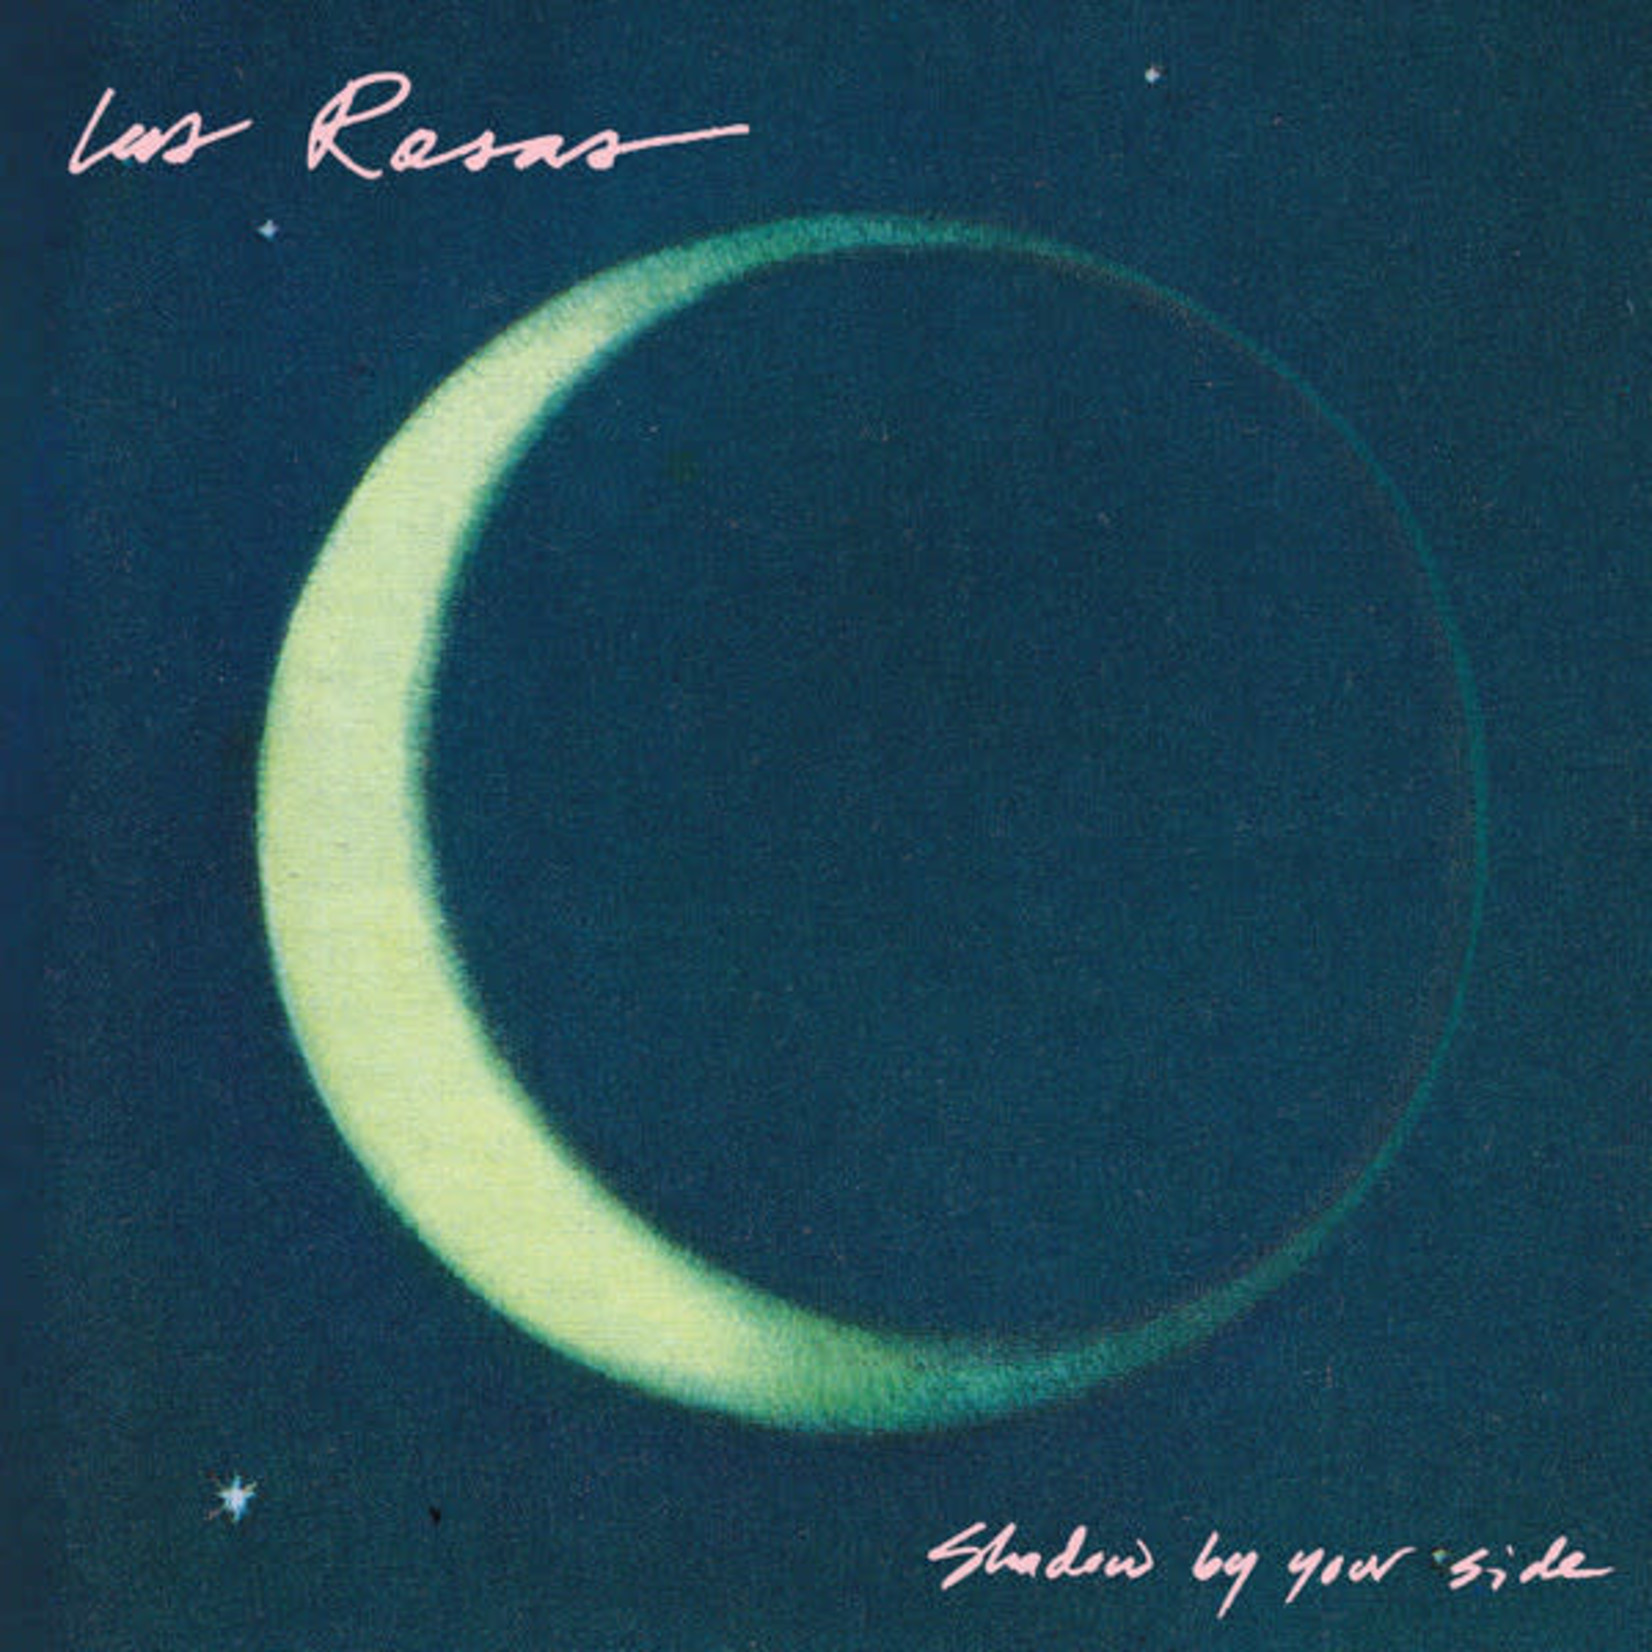 Las Rosas Las Rosas – Shadow By Your Side (VG)